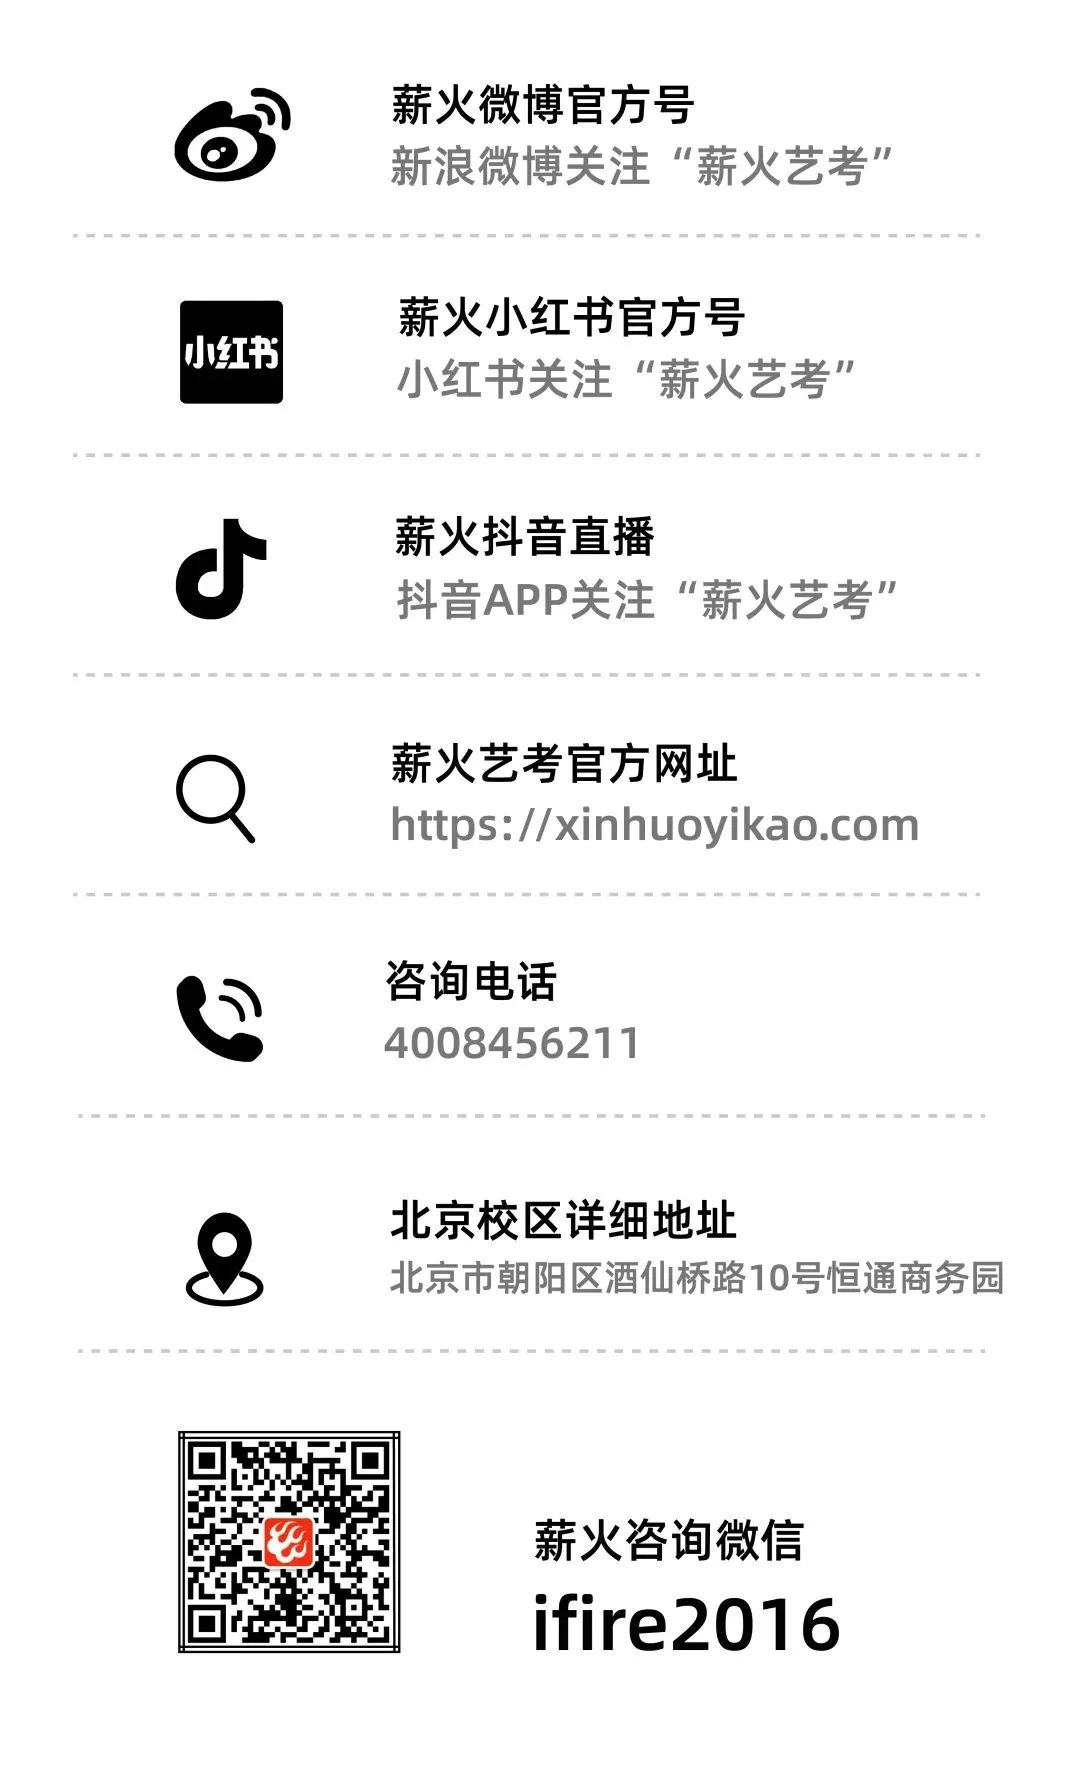 1681364129-xinhuoyikao.com